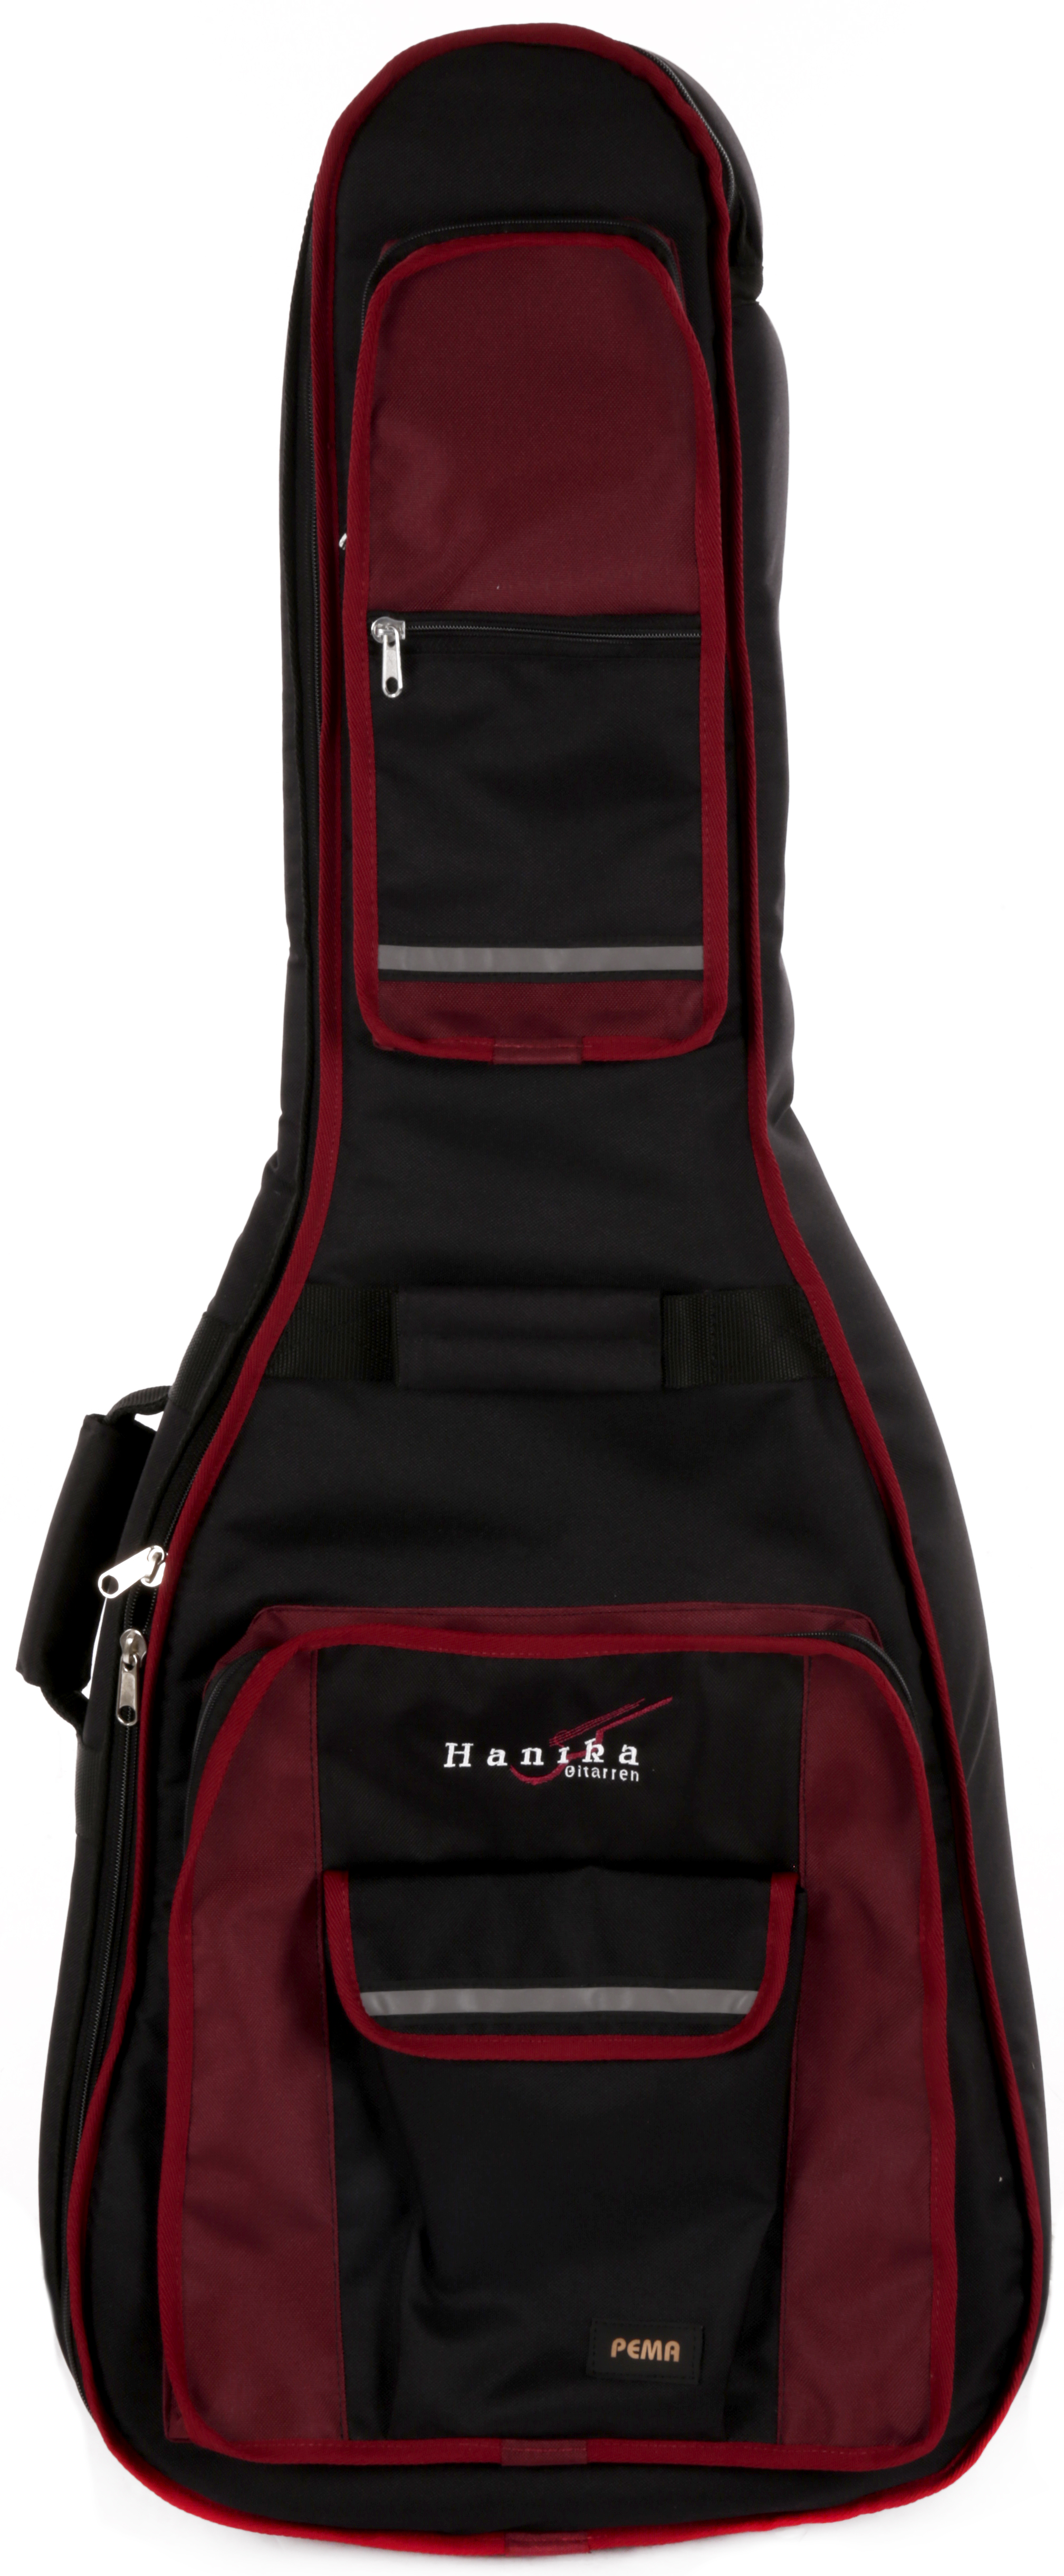 Tasche schwarz/rot Pema-Komfort mit Logo